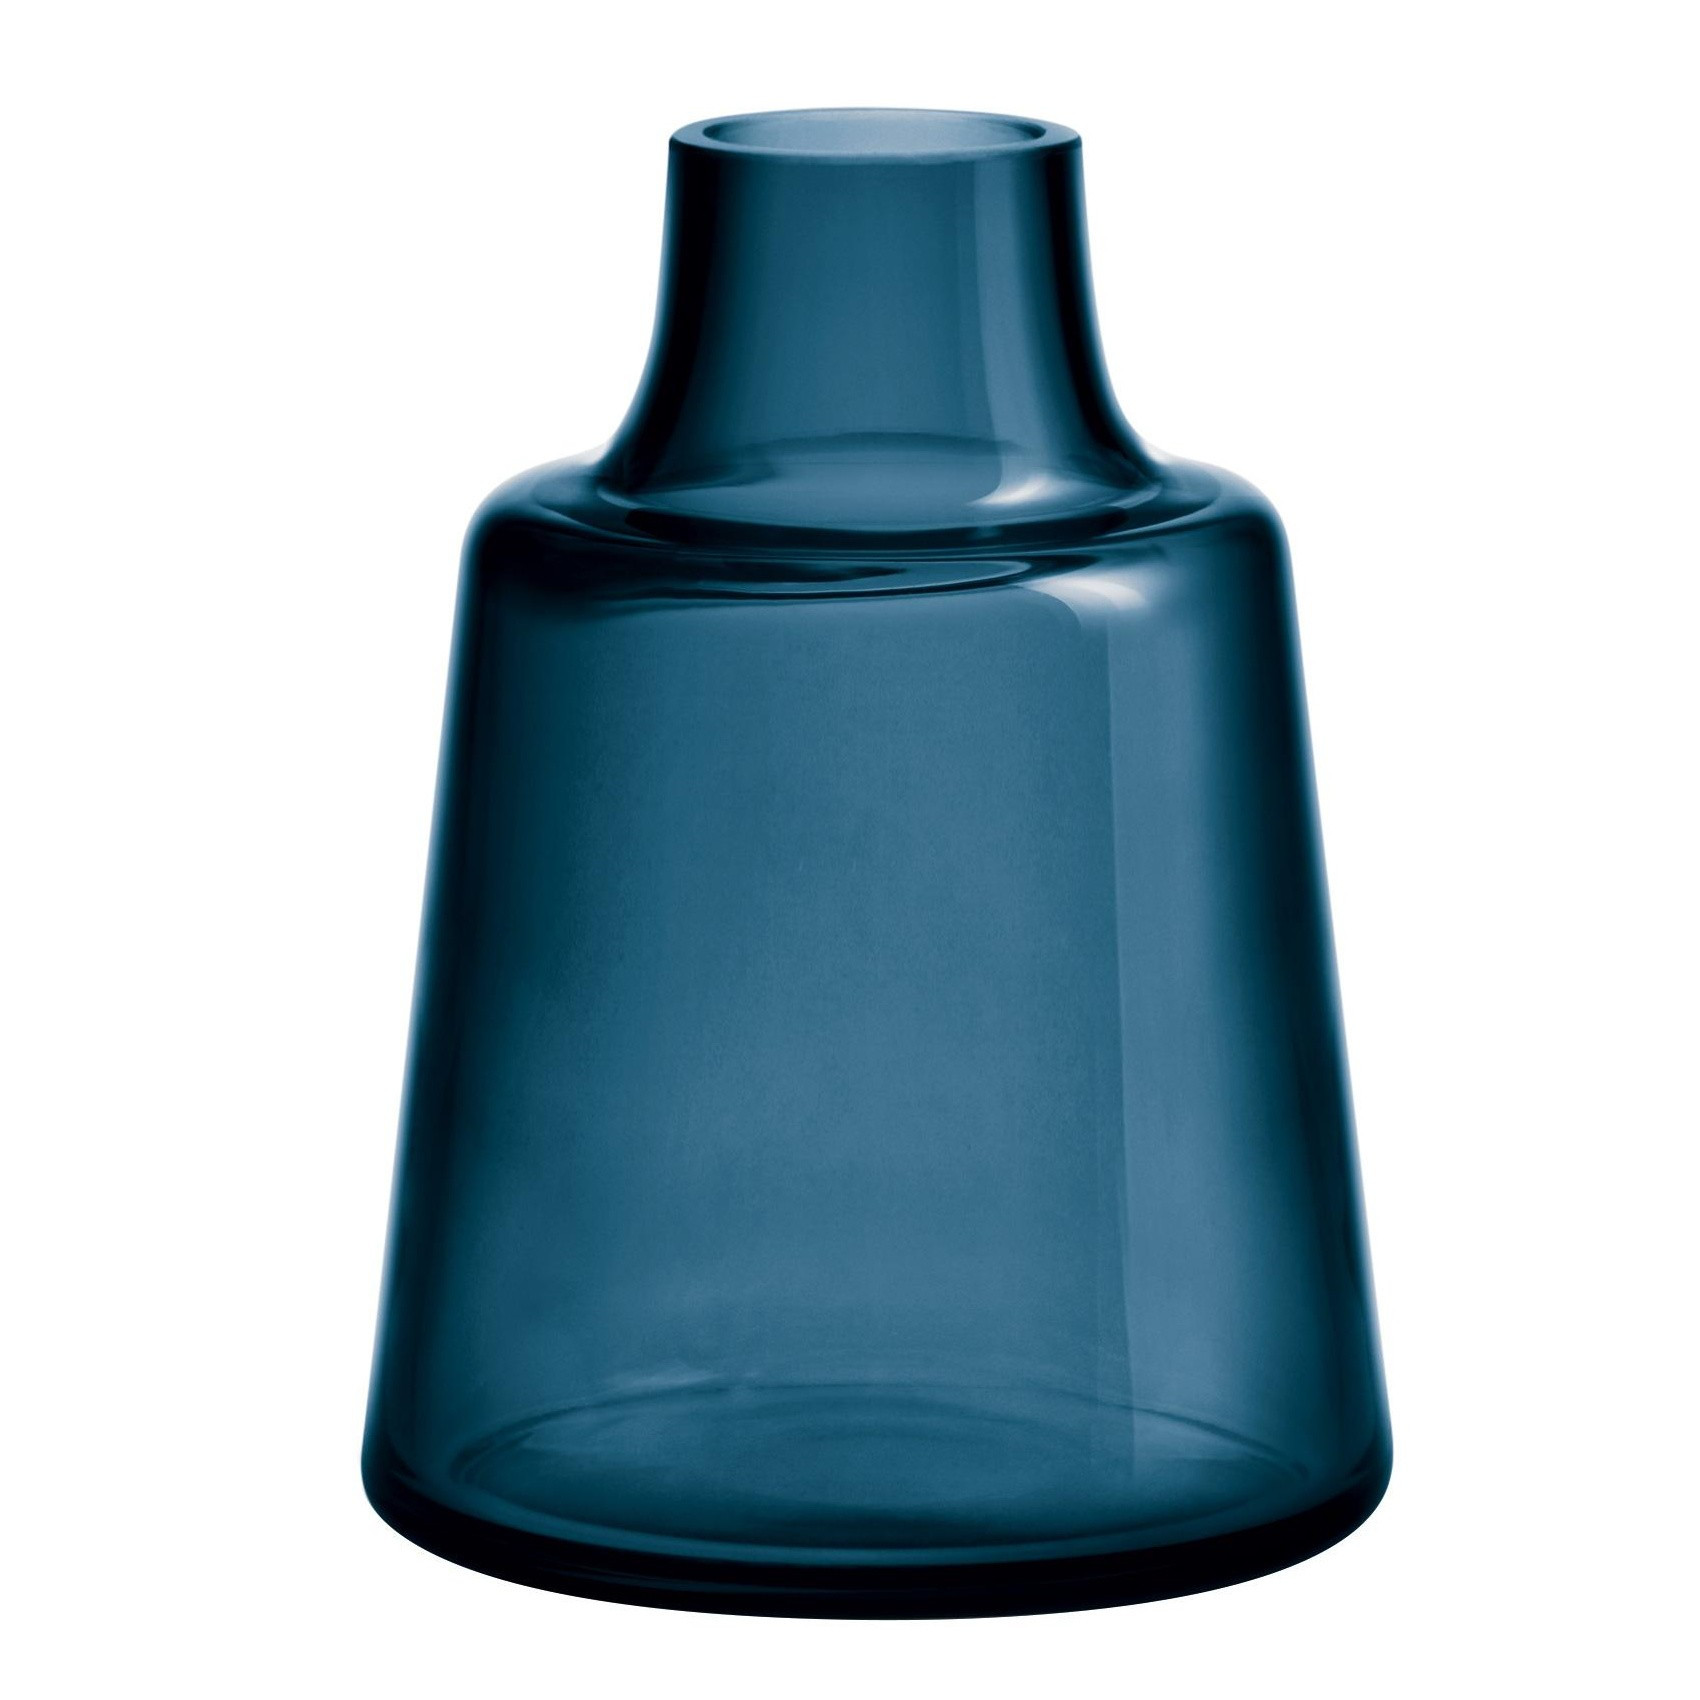 12 Lovable Cobalt Blue Vase 2024 free download cobalt blue vase of holmegaard flora vase h 24cm ambientedirect inside 232361 1700x1700 id1922502 c23d7e4f57bf890f68b32fb46a88790c